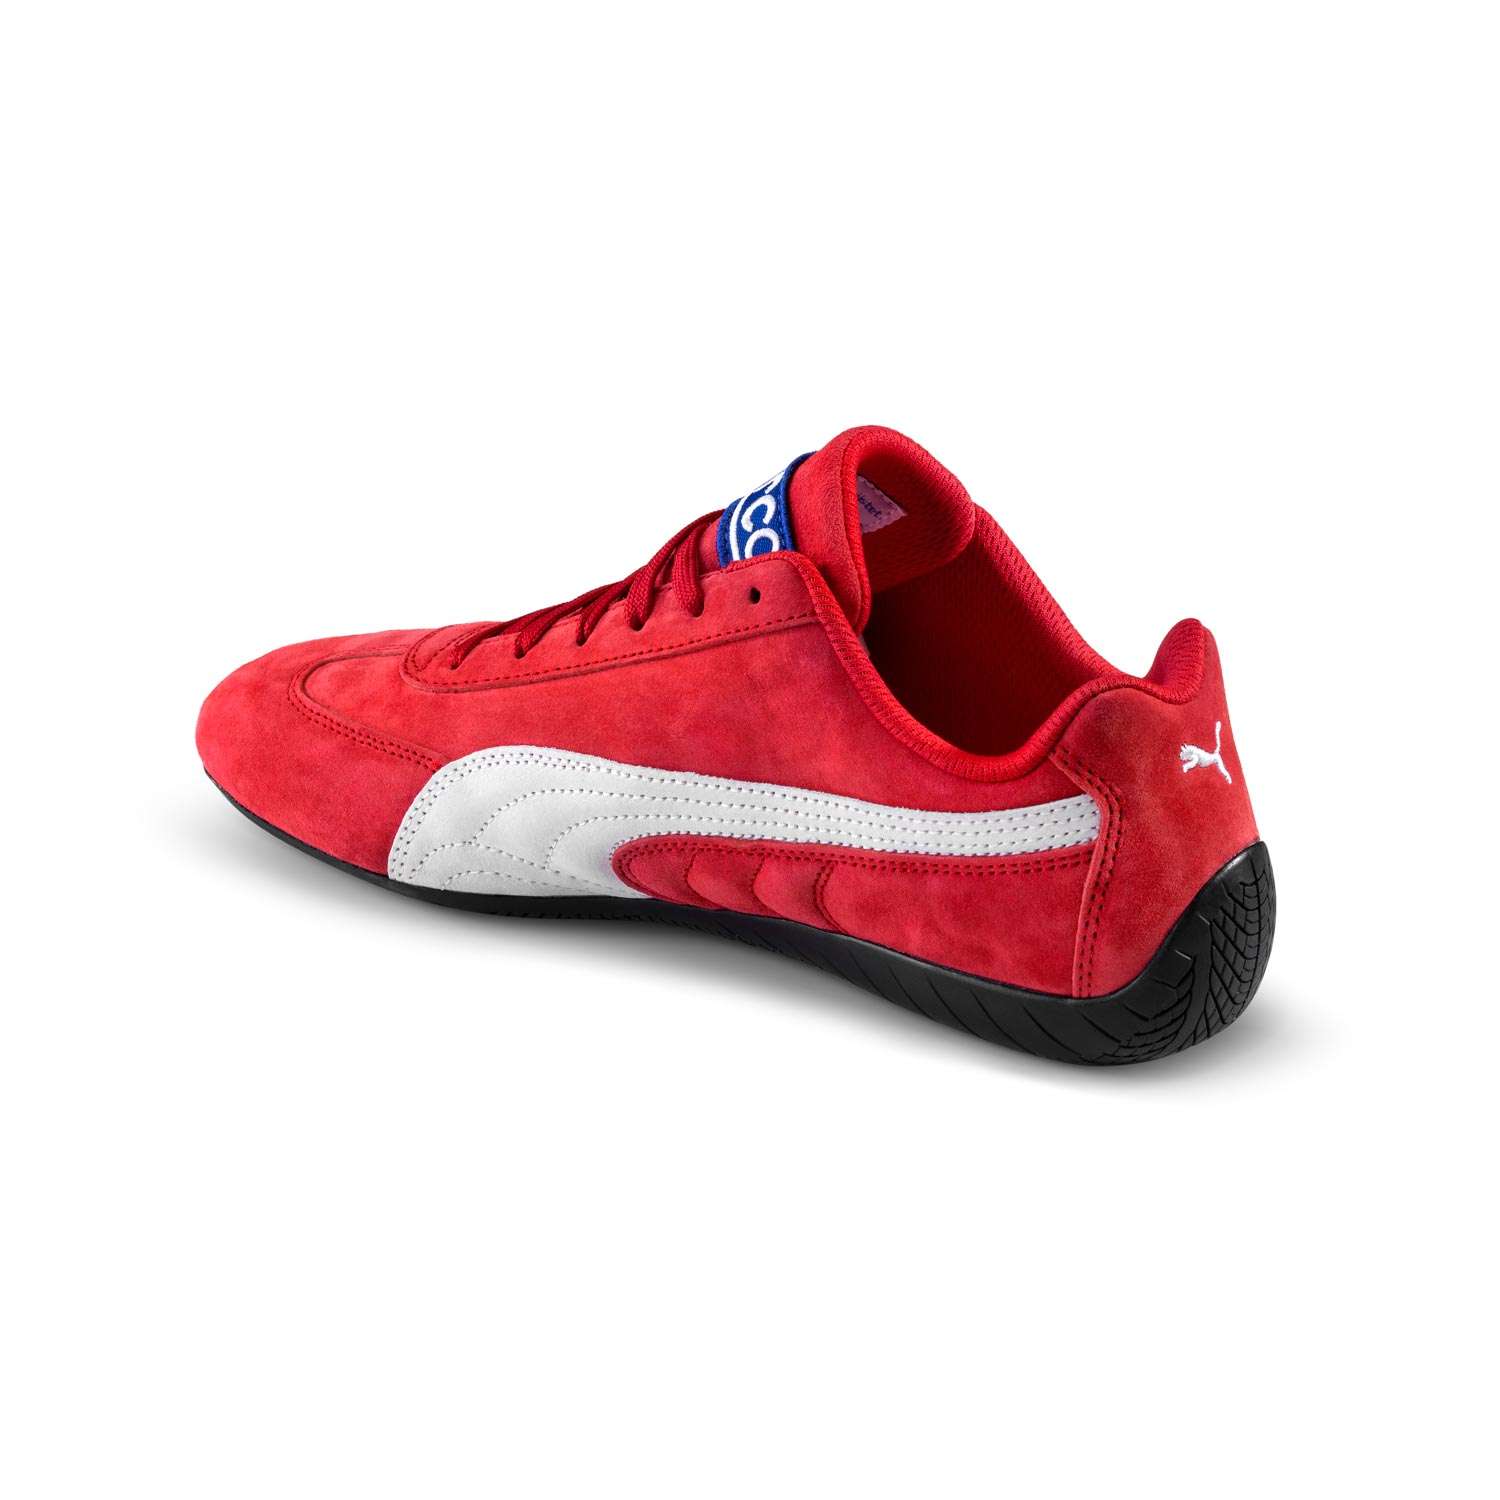 Birma onderwerp door elkaar haspelen Sparco Italy PUMA Speedcat Shoes Red Red | Racewear \ Shoes Shop by Team \  Motorsport Equipment \ Sparco | F1store.net